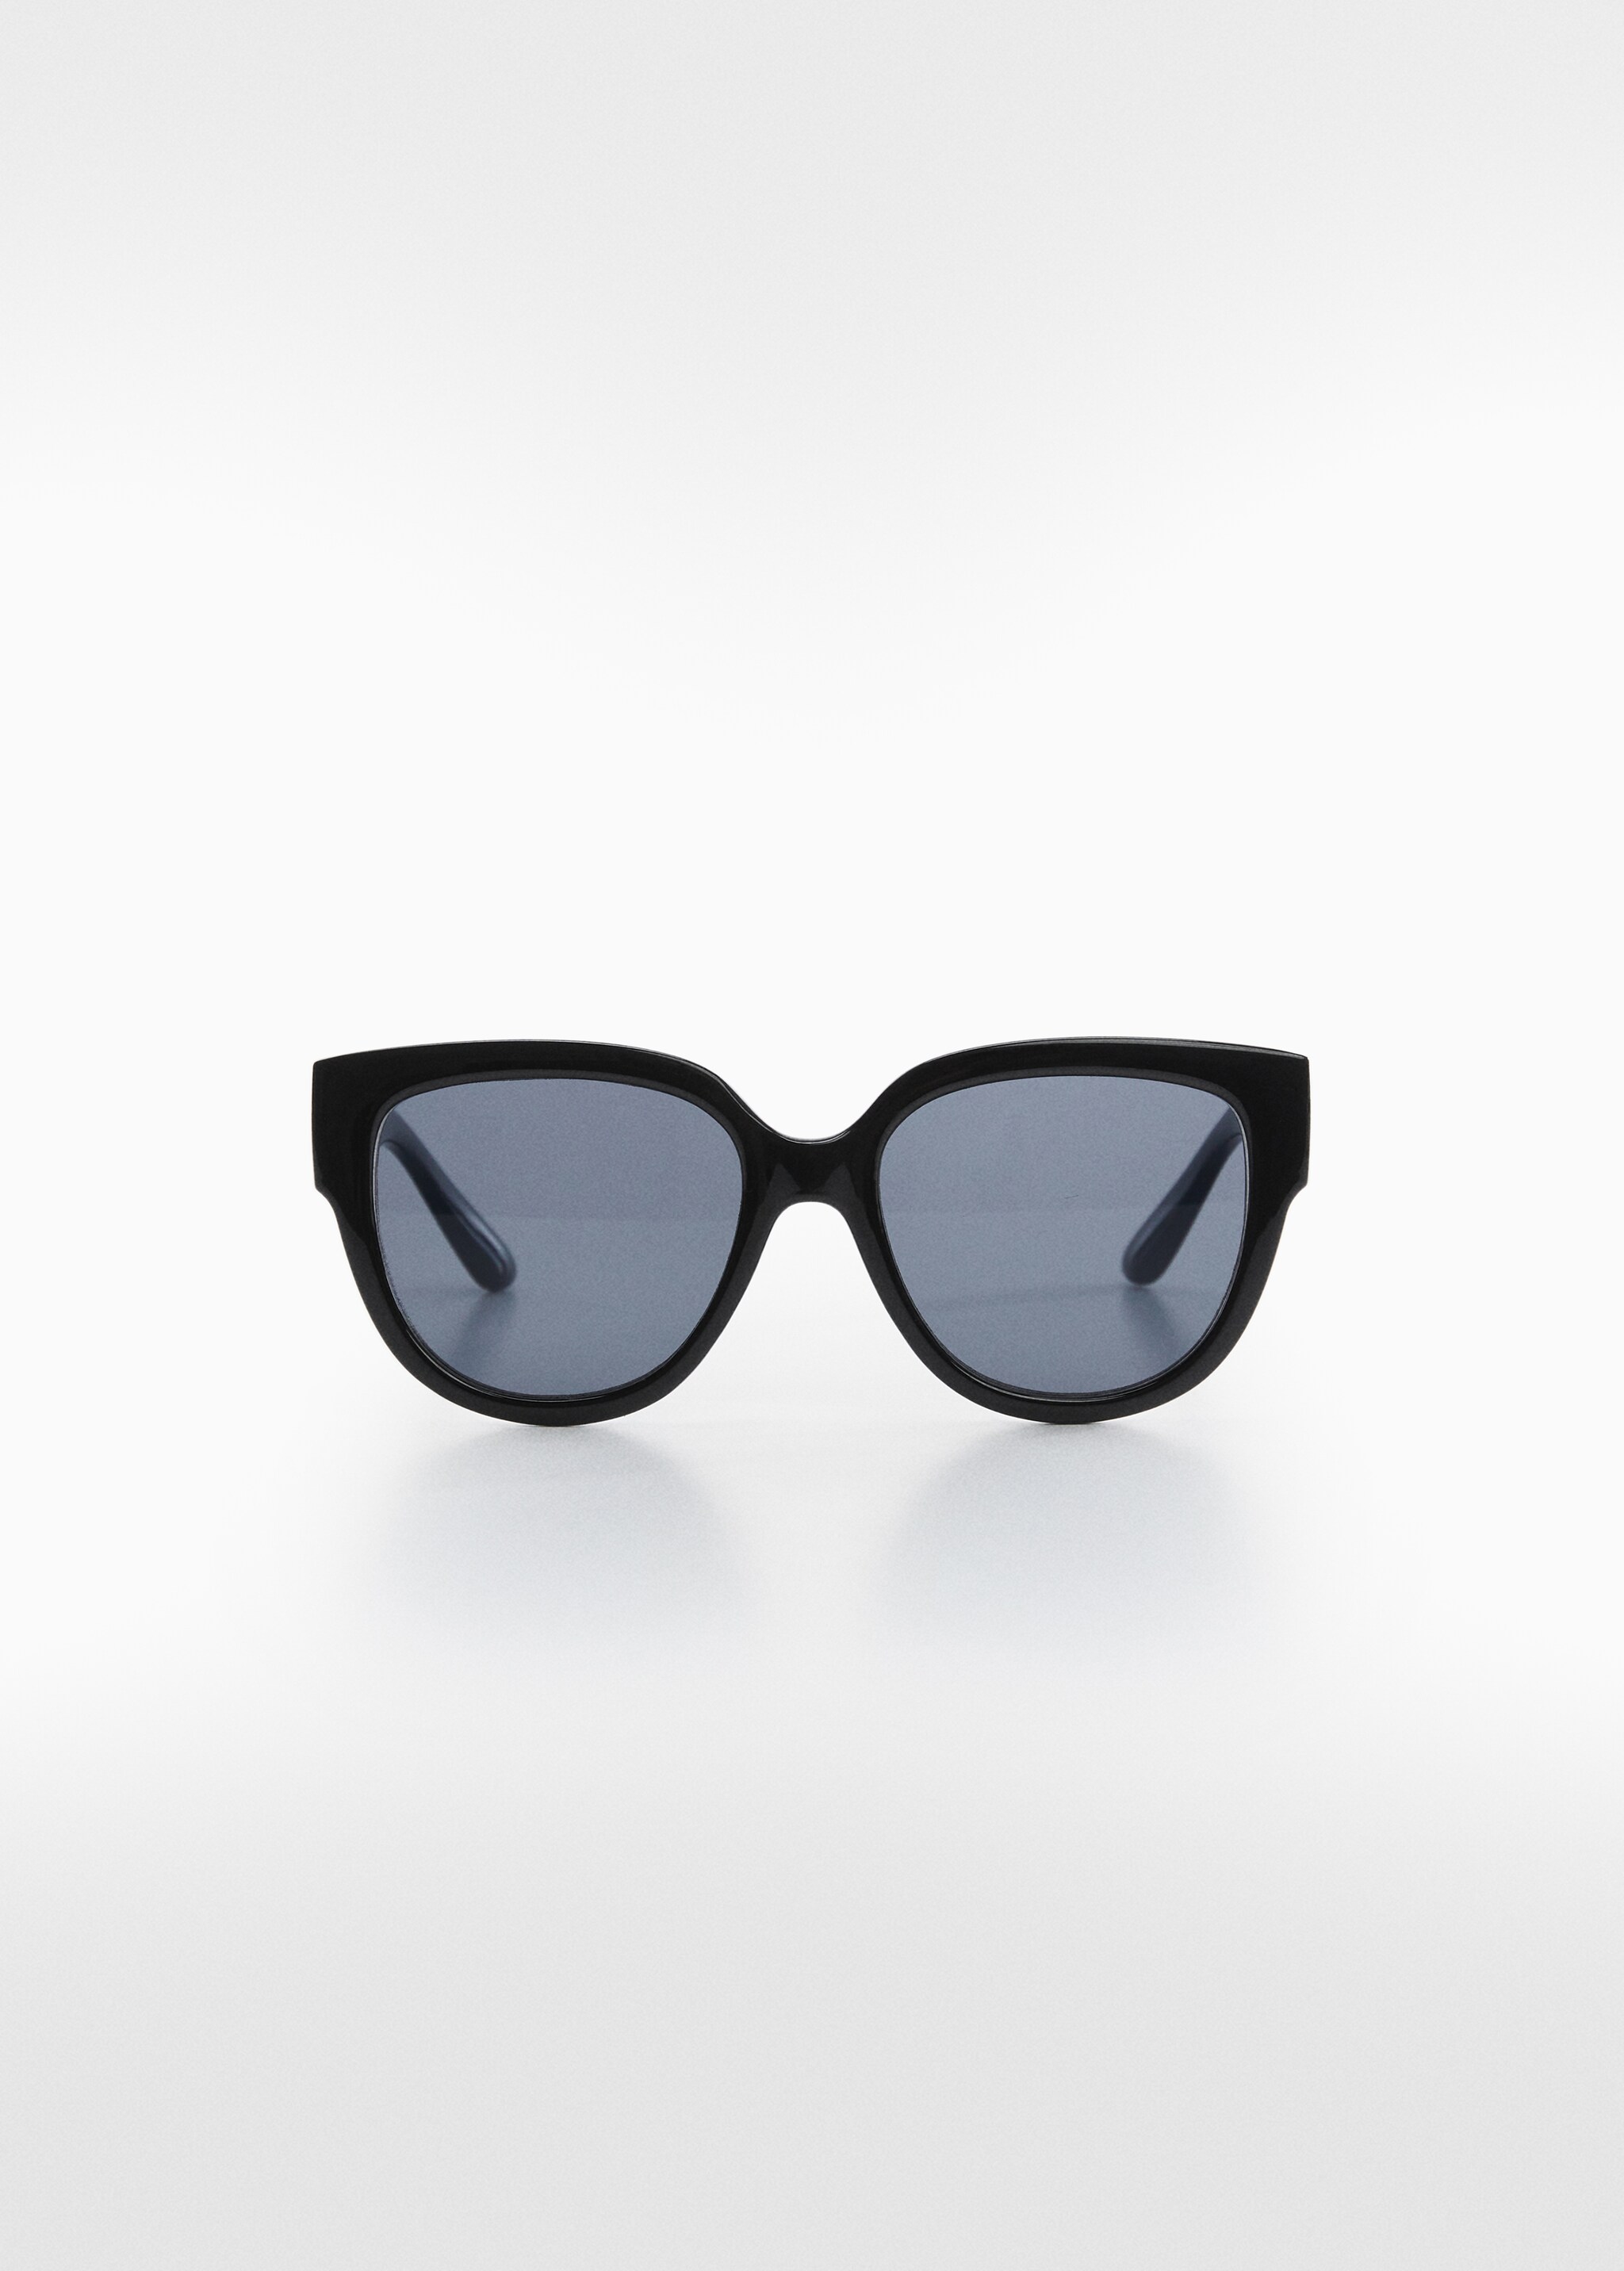 Γυαλιά ηλίου ρετρό  - Προϊόν χωρίς μοντέλο